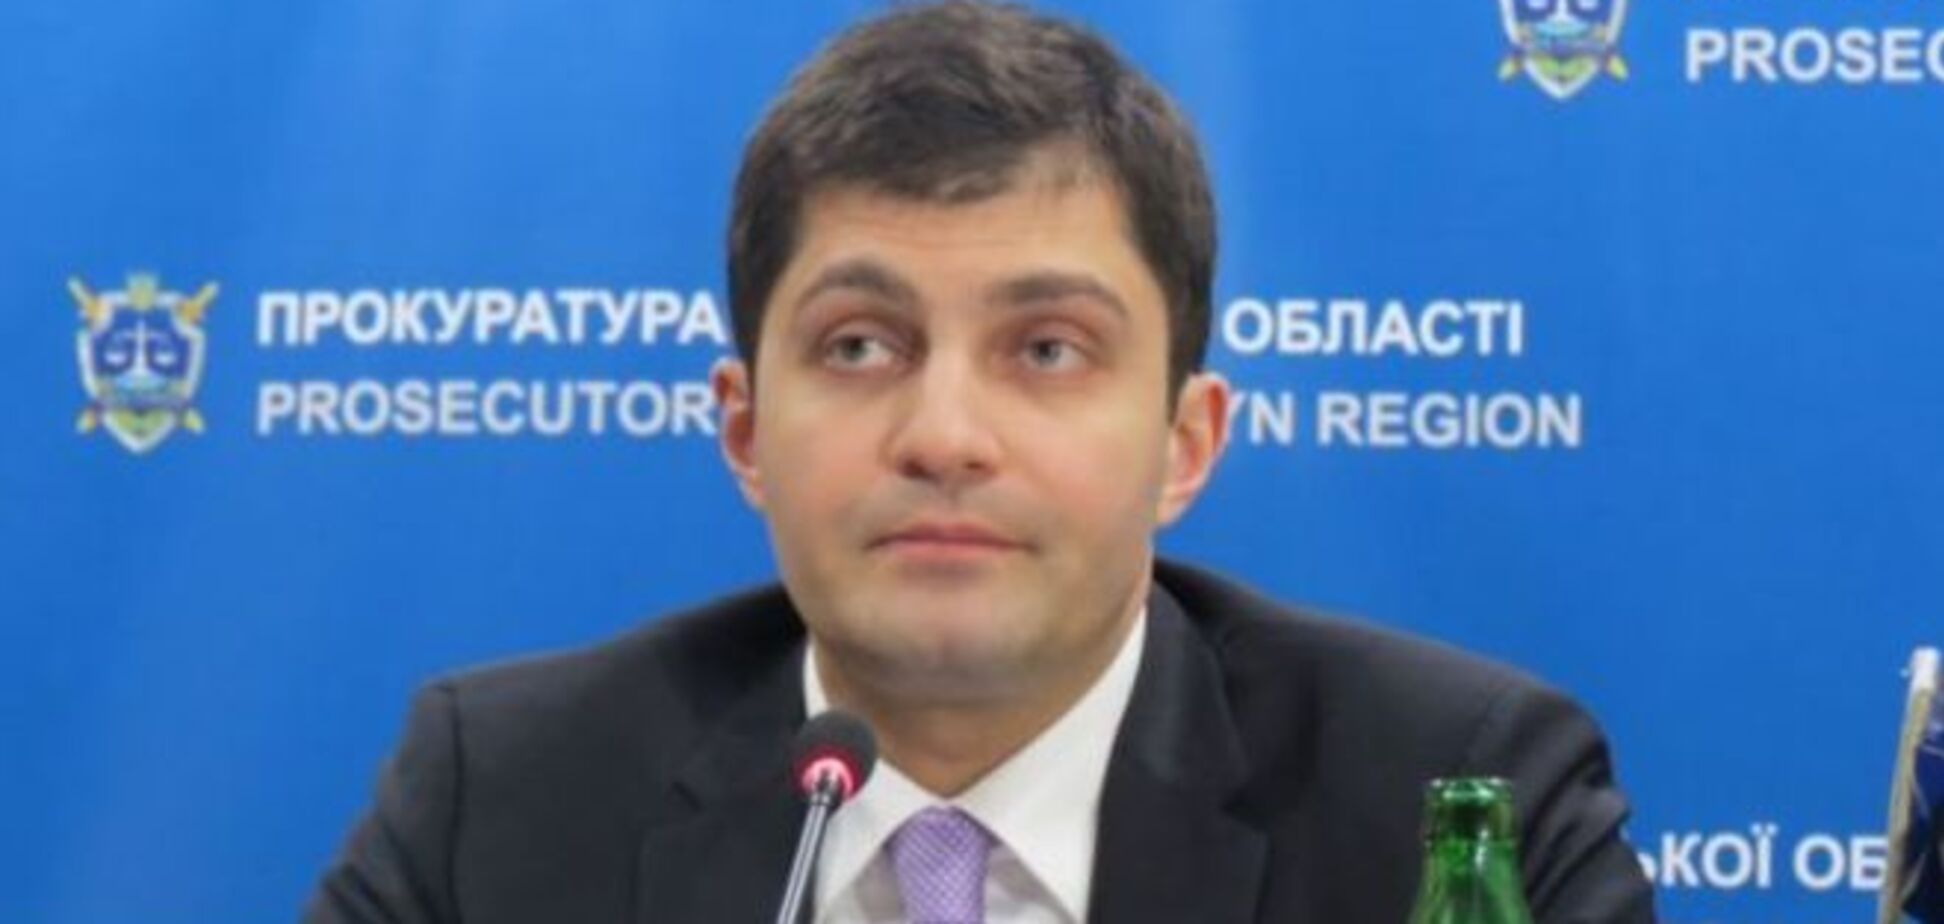 Заступник генпрокурора Саквалерідзе: у 2014 році посаду прокурора купувалася за $3 млн